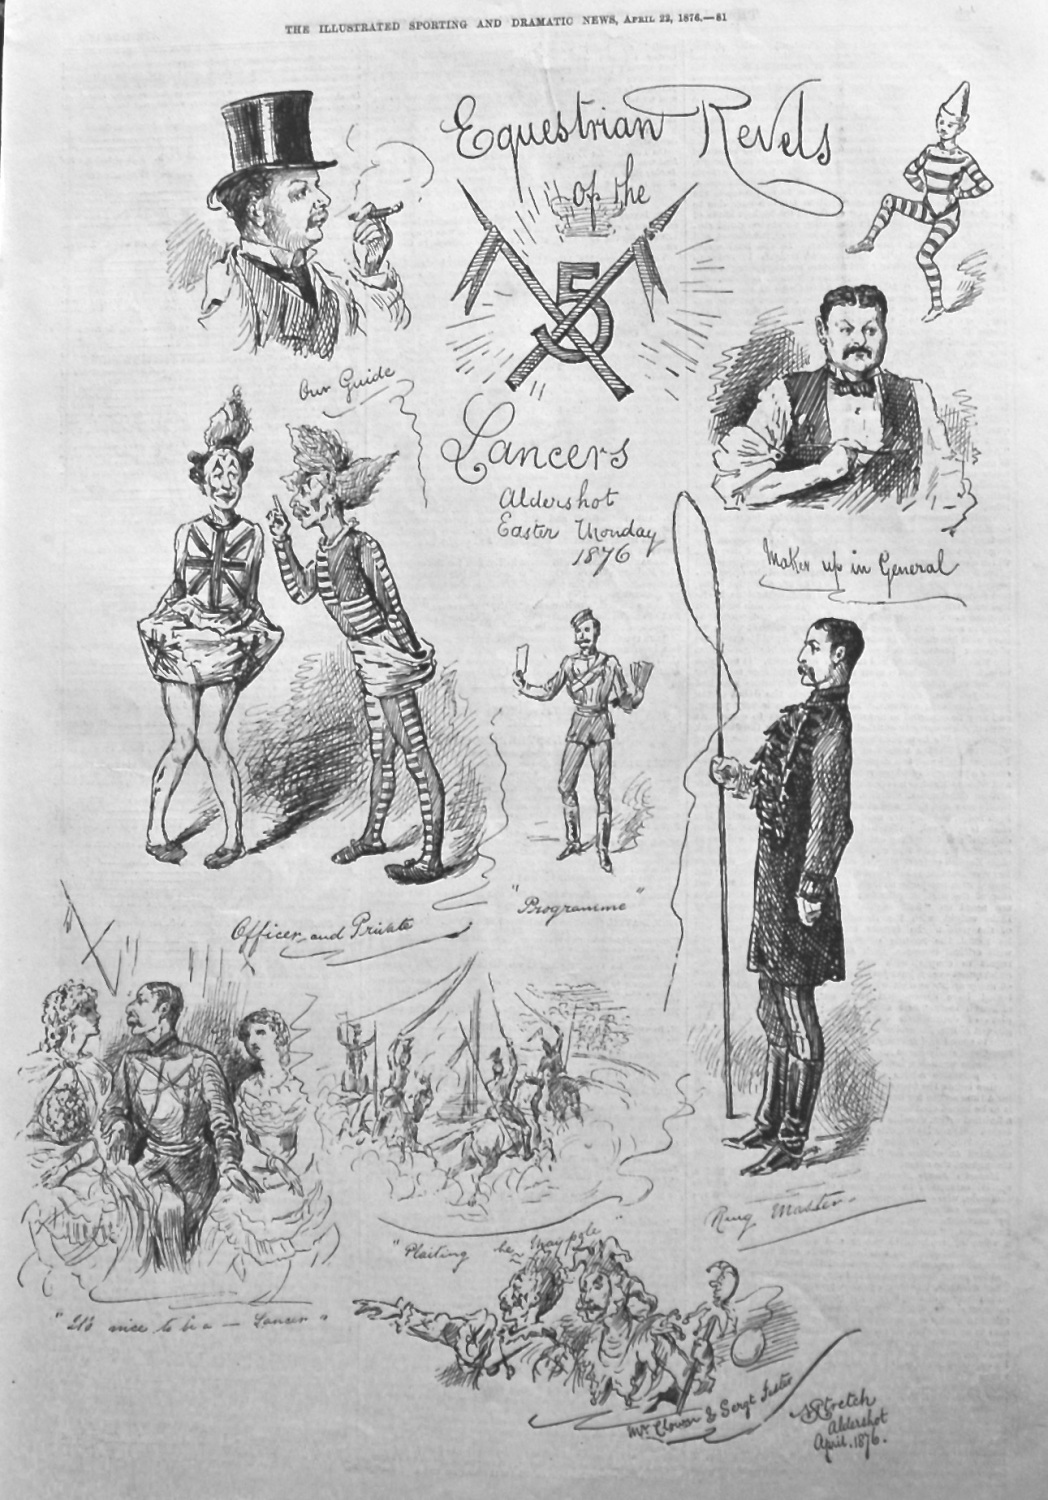 Equestrian Revels of the 5th Lancers, Aldershot Easter Monday 1876.